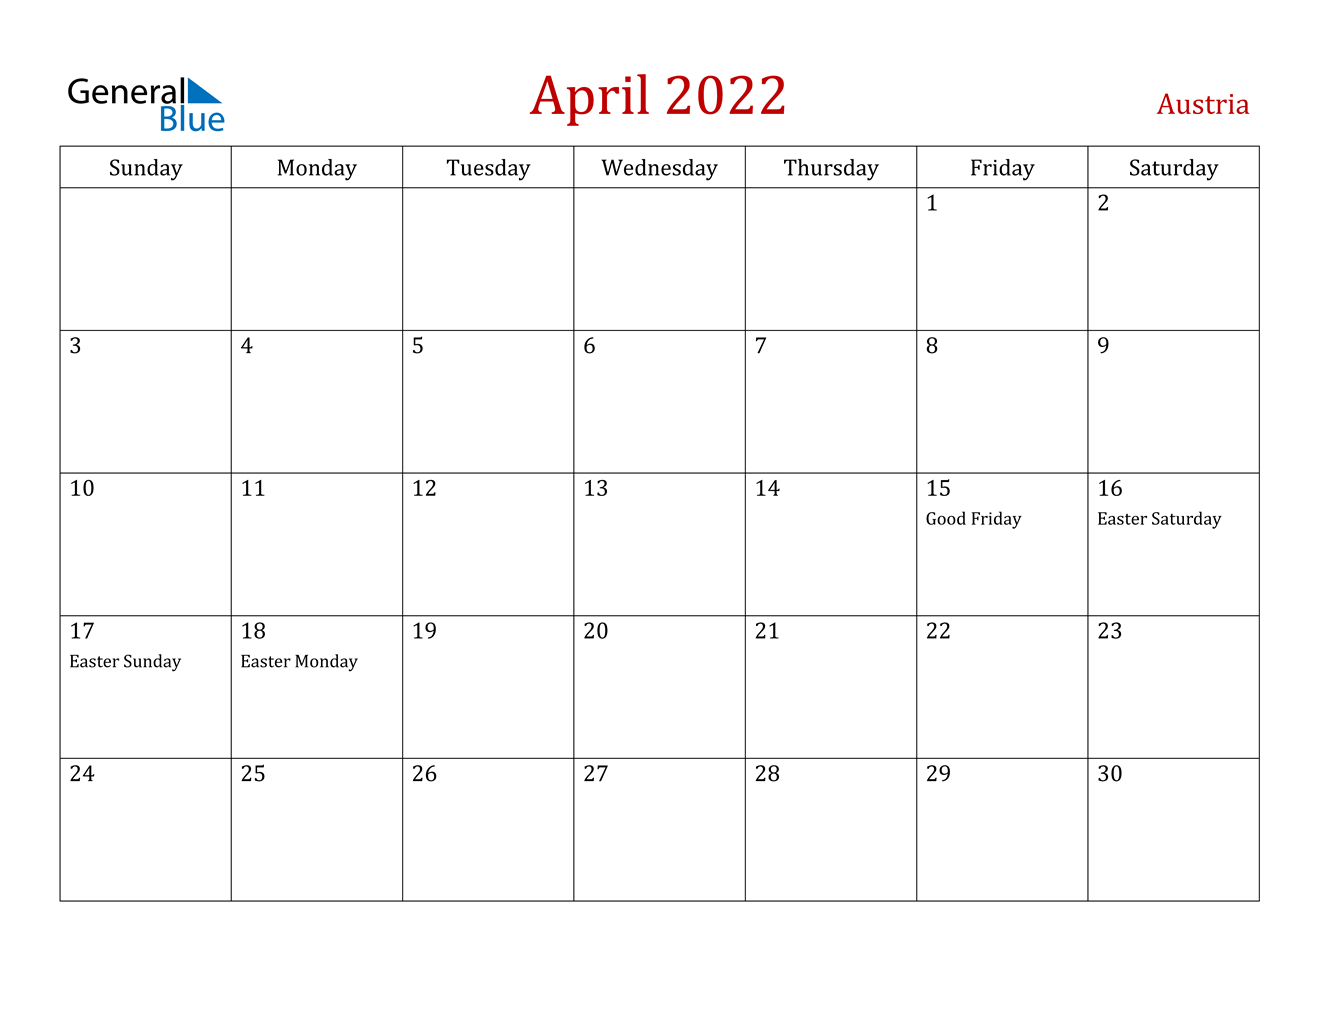 April 2022 Calendar - Austria  Calendar For April 2022 With Holidays